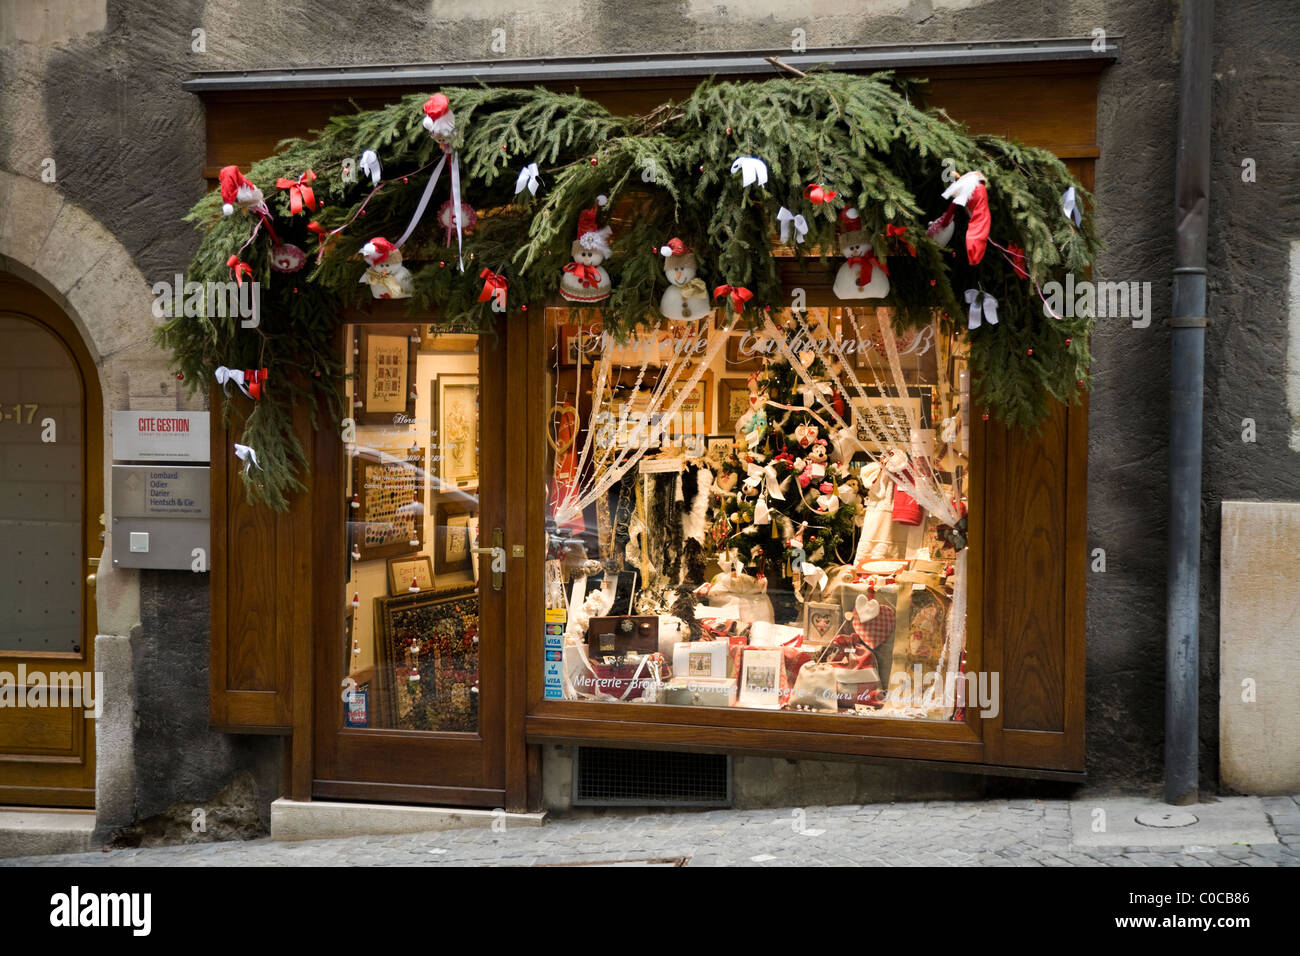 Atelier de couture / Broderie / couture / Art / galerie avec des  décorations de Noël à Genève / Geneva, Suisse Photo Stock - Alamy